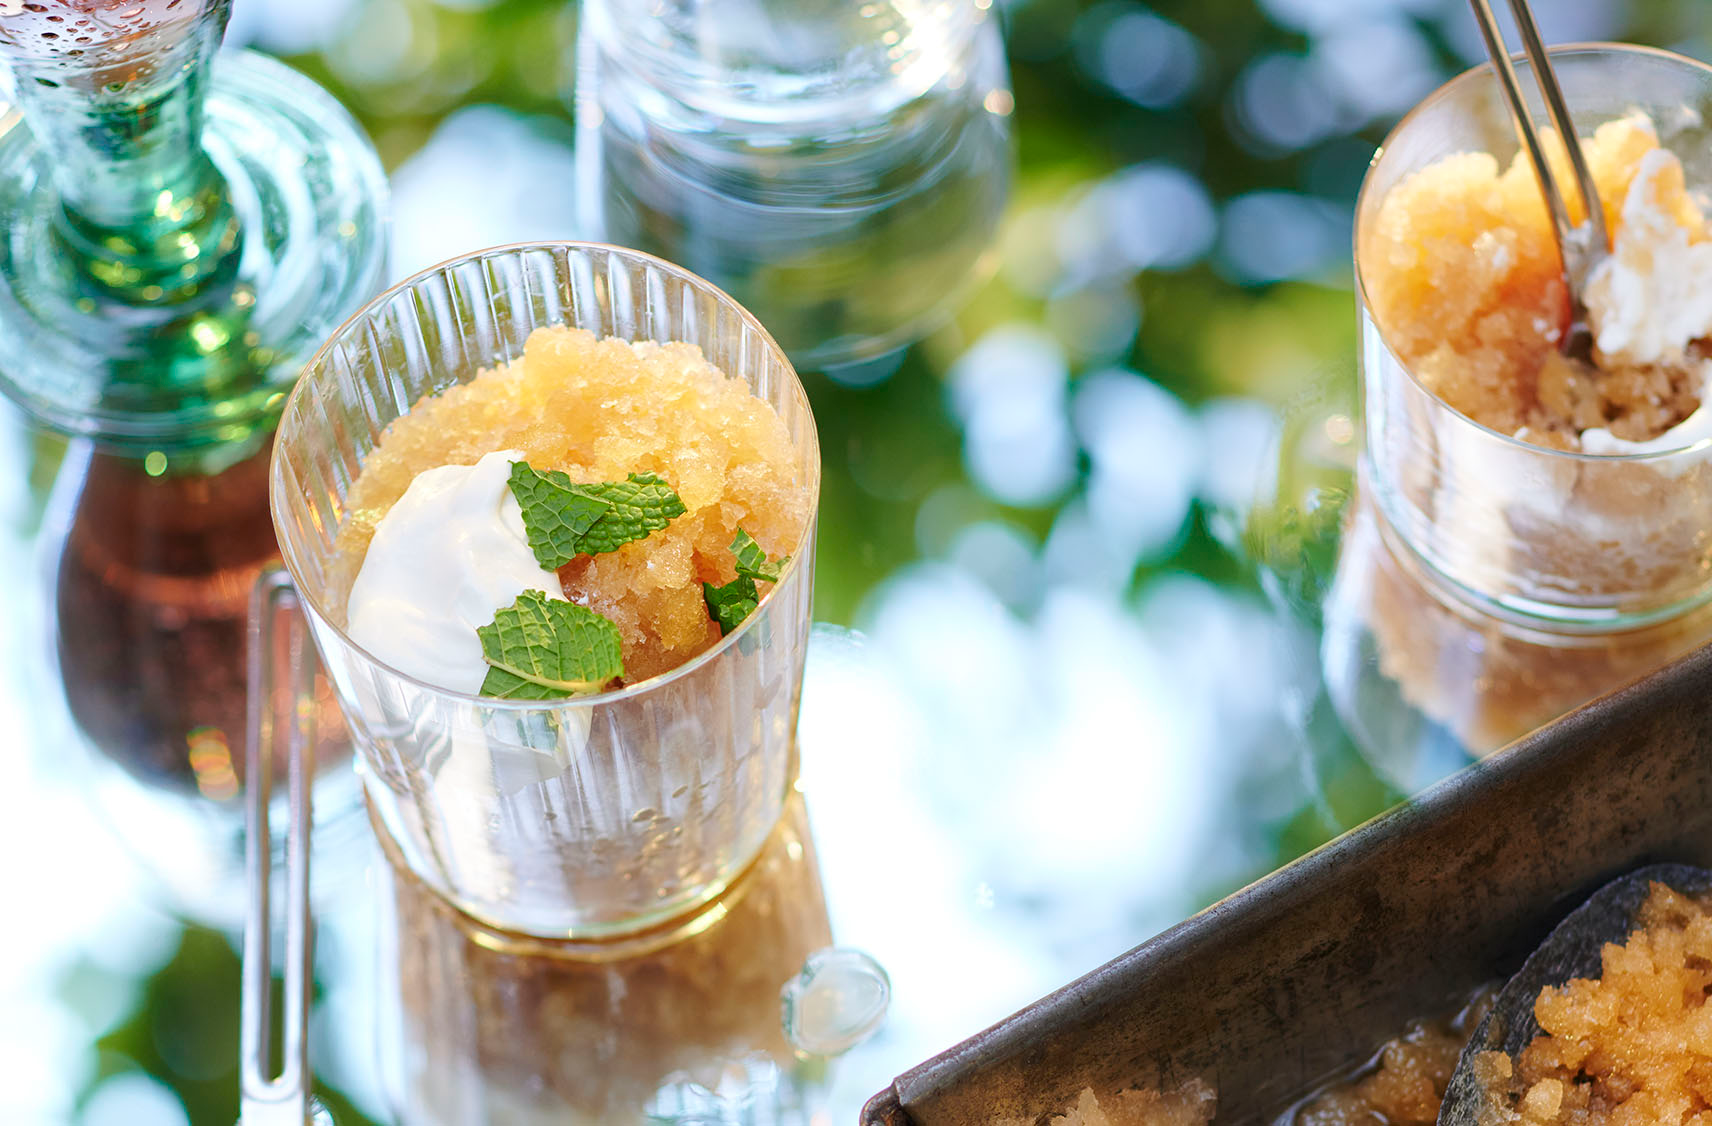 Deux verres de granité au café infusé à froid à l'agrume yuzu garni de crème fouettée et parsemé de sucre, de croustilles de noix de coco et de feuilles de menthe fraîche sur un plateau.